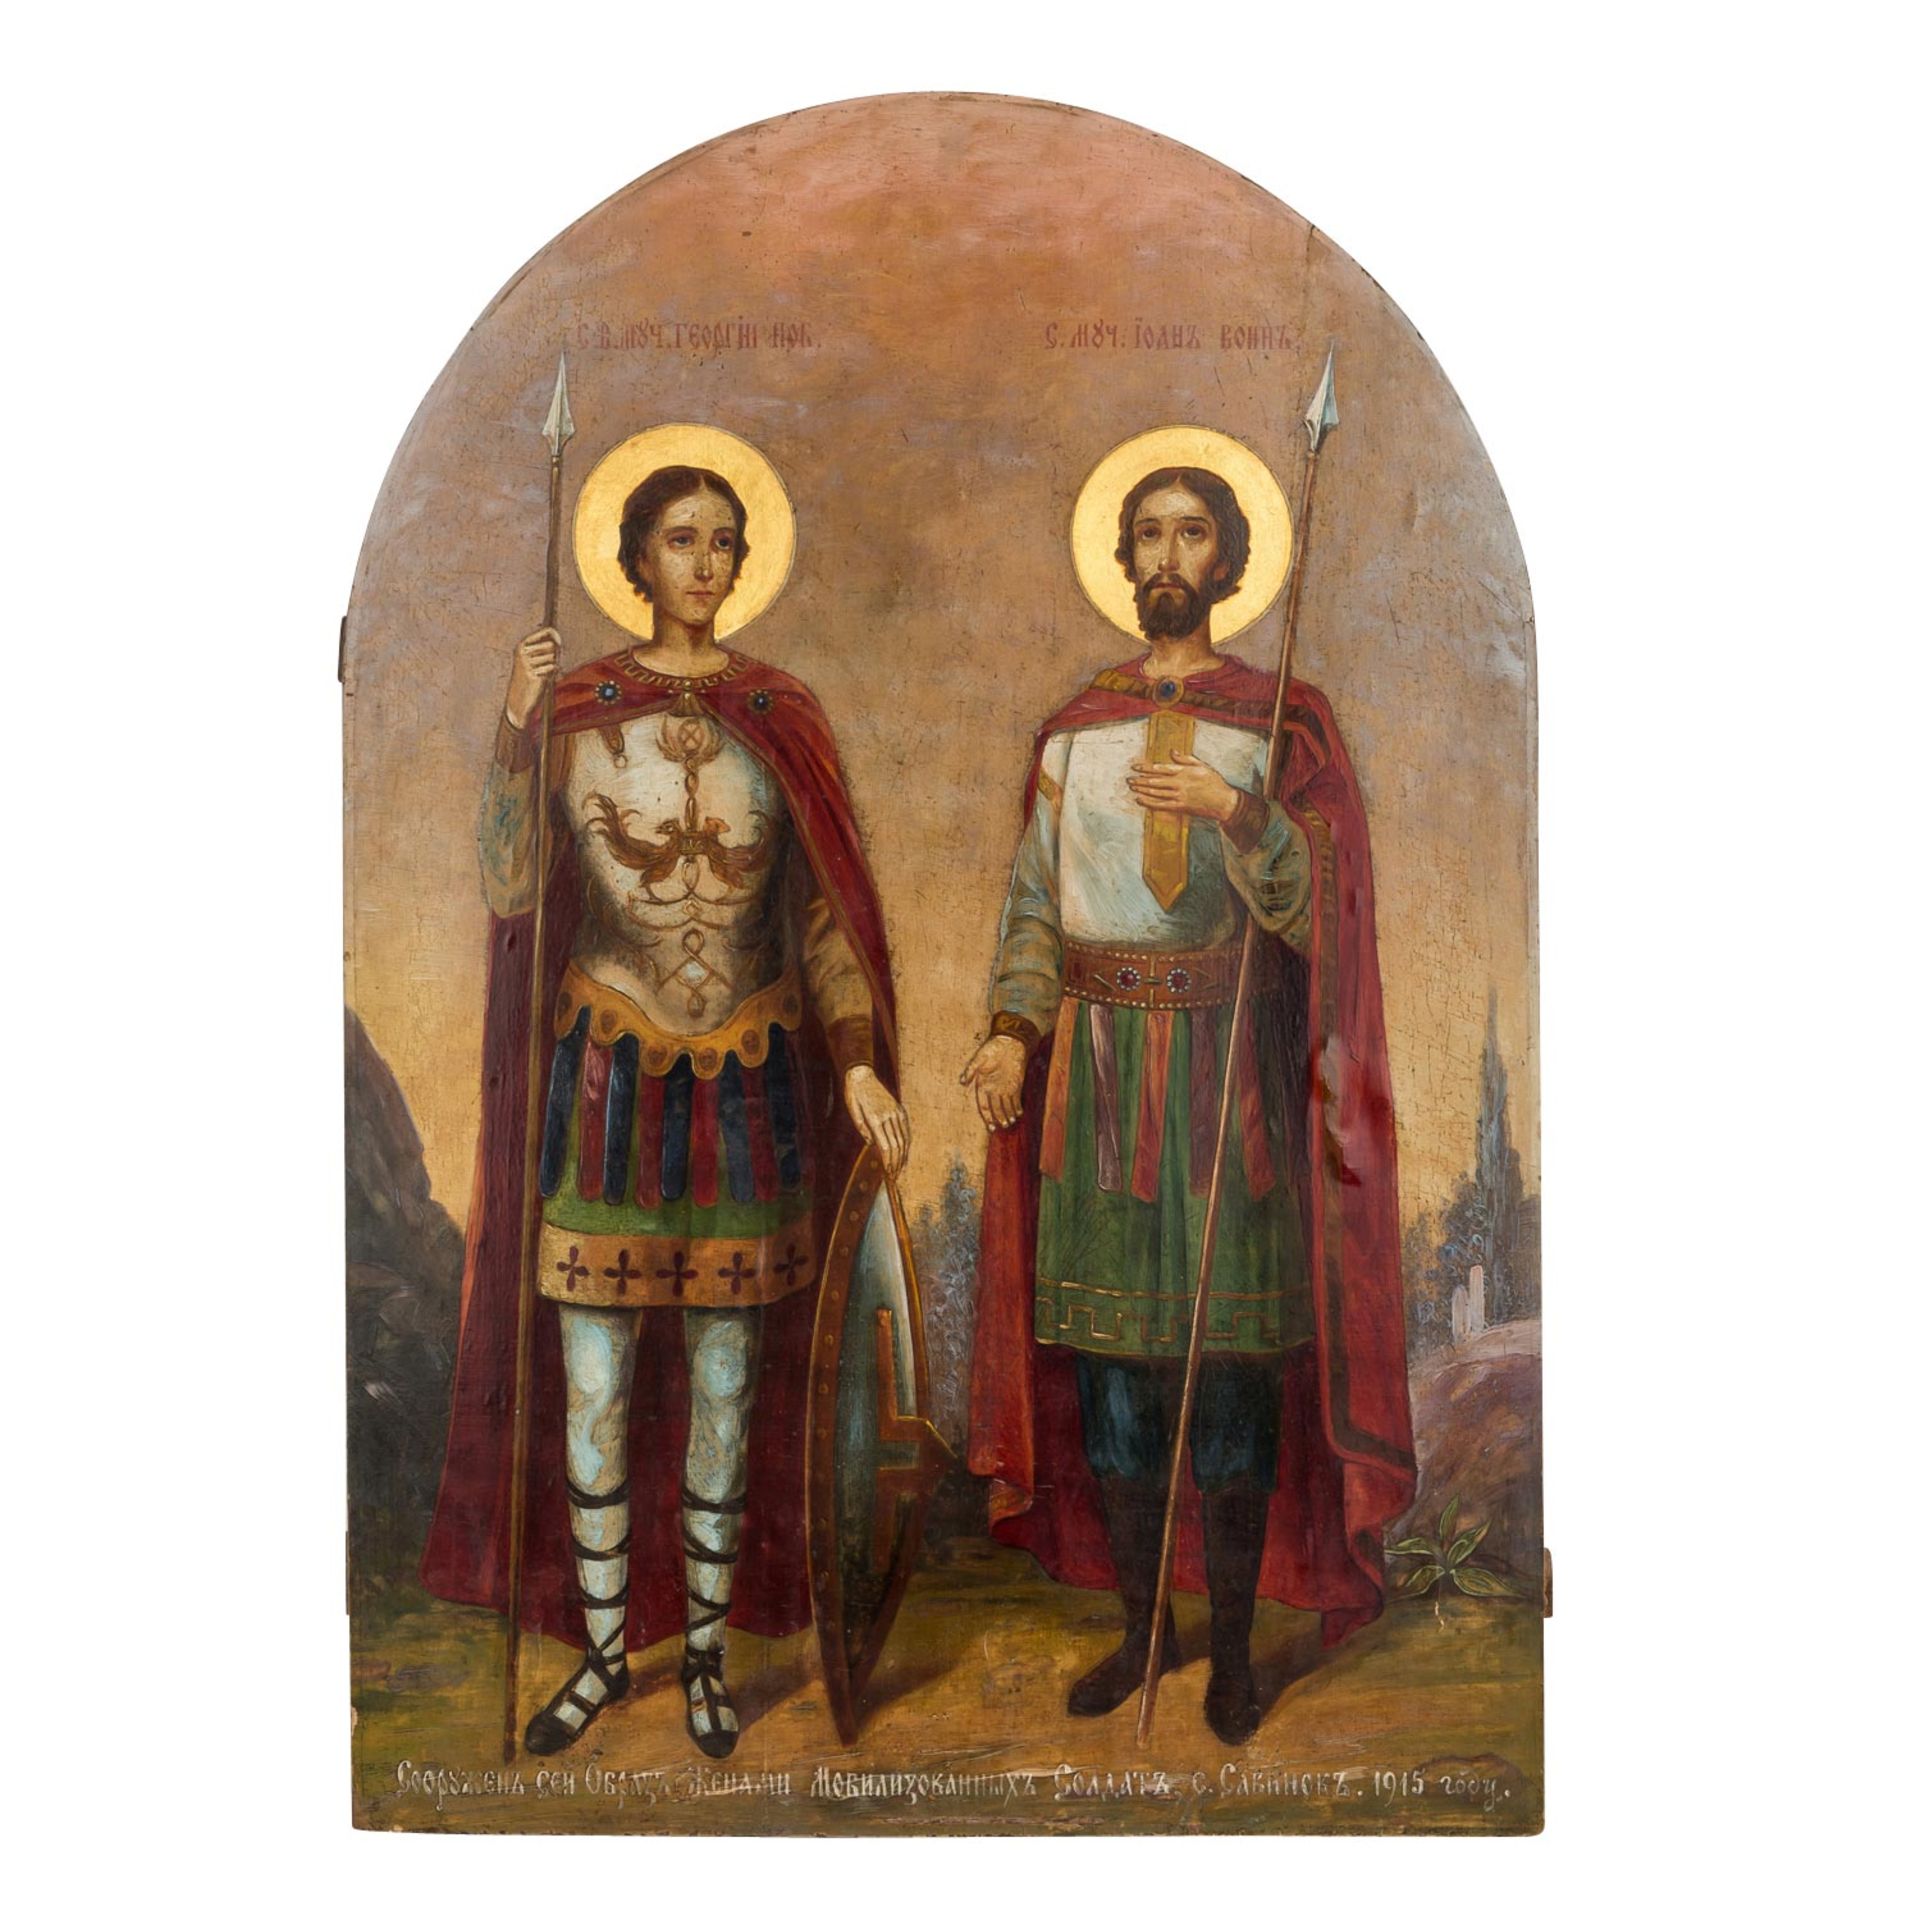 IKONE "Heiliger Georg und Heiliger Johannes", Russland um 1915,beide Heilige mit Lanze vor